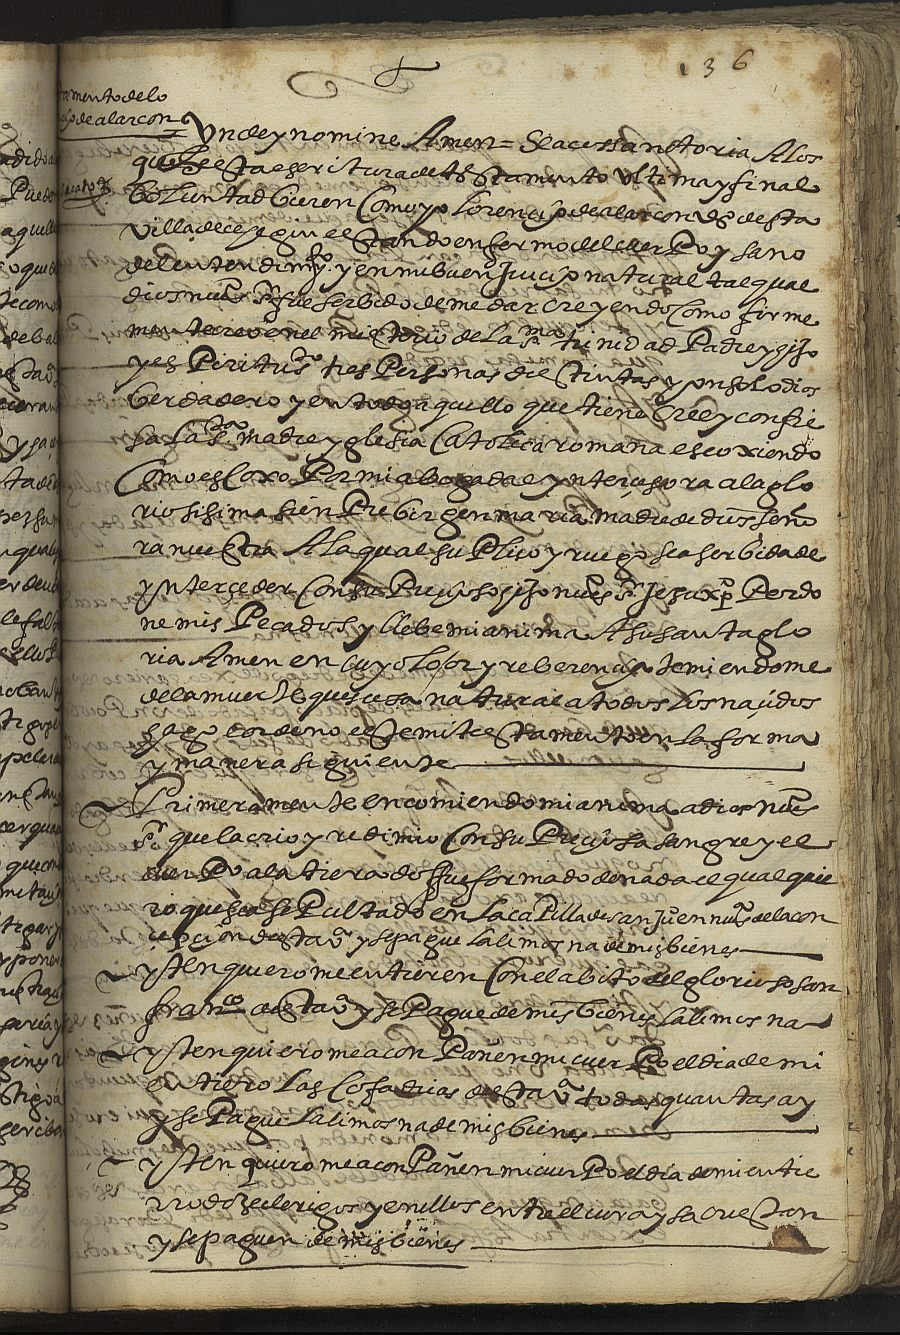 Testamento de Lorenzo de Alarcón, marido de Juana Martínez, vecinos de Cehegín.